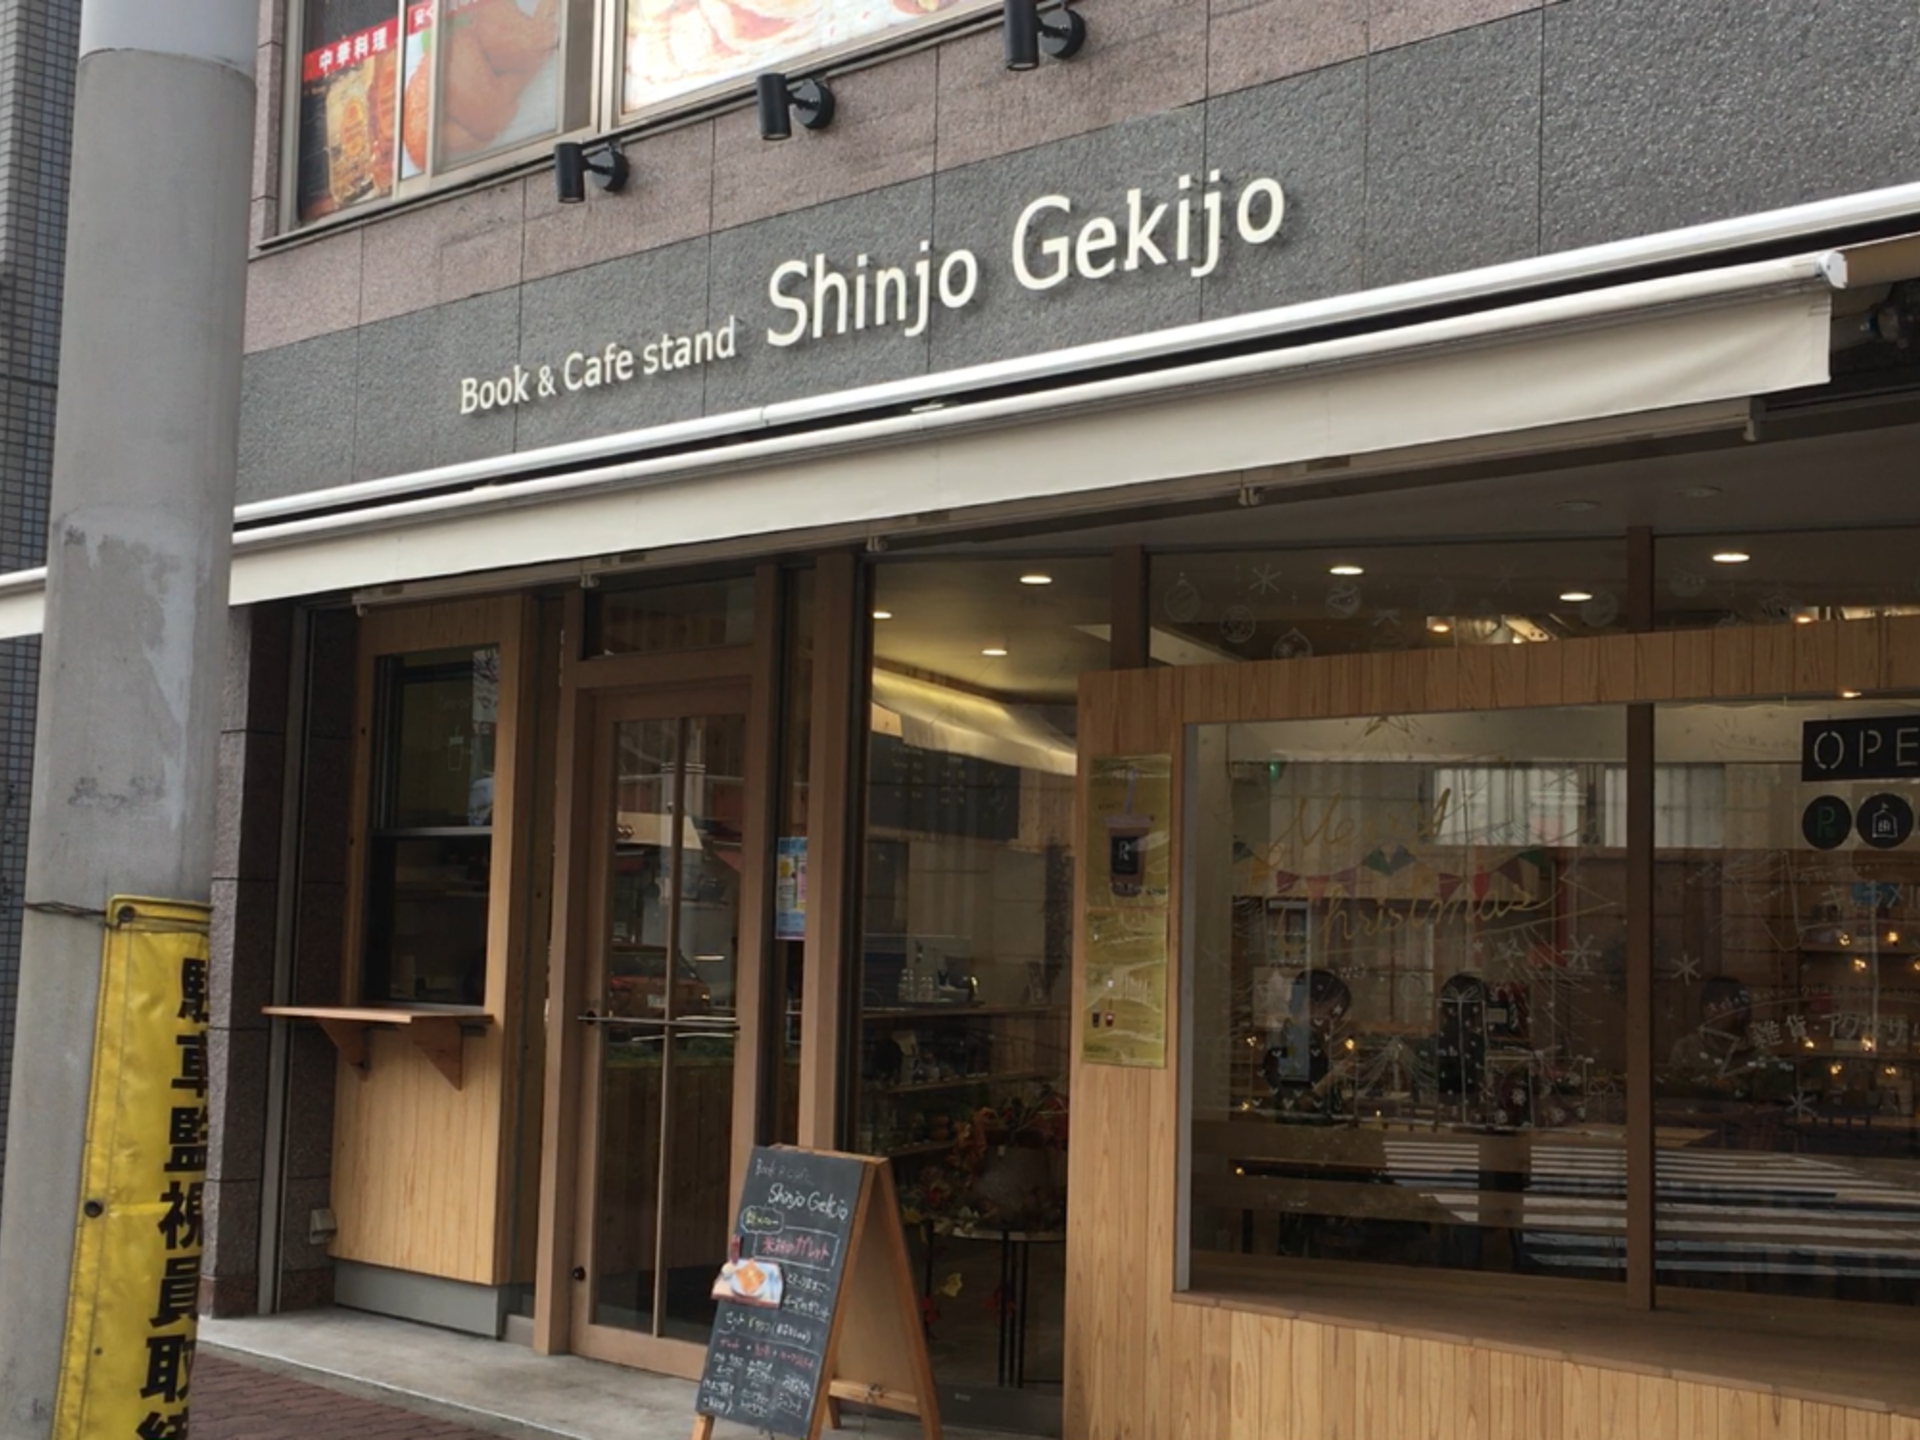 Book＆Cafe stand Shinjo Gekijo